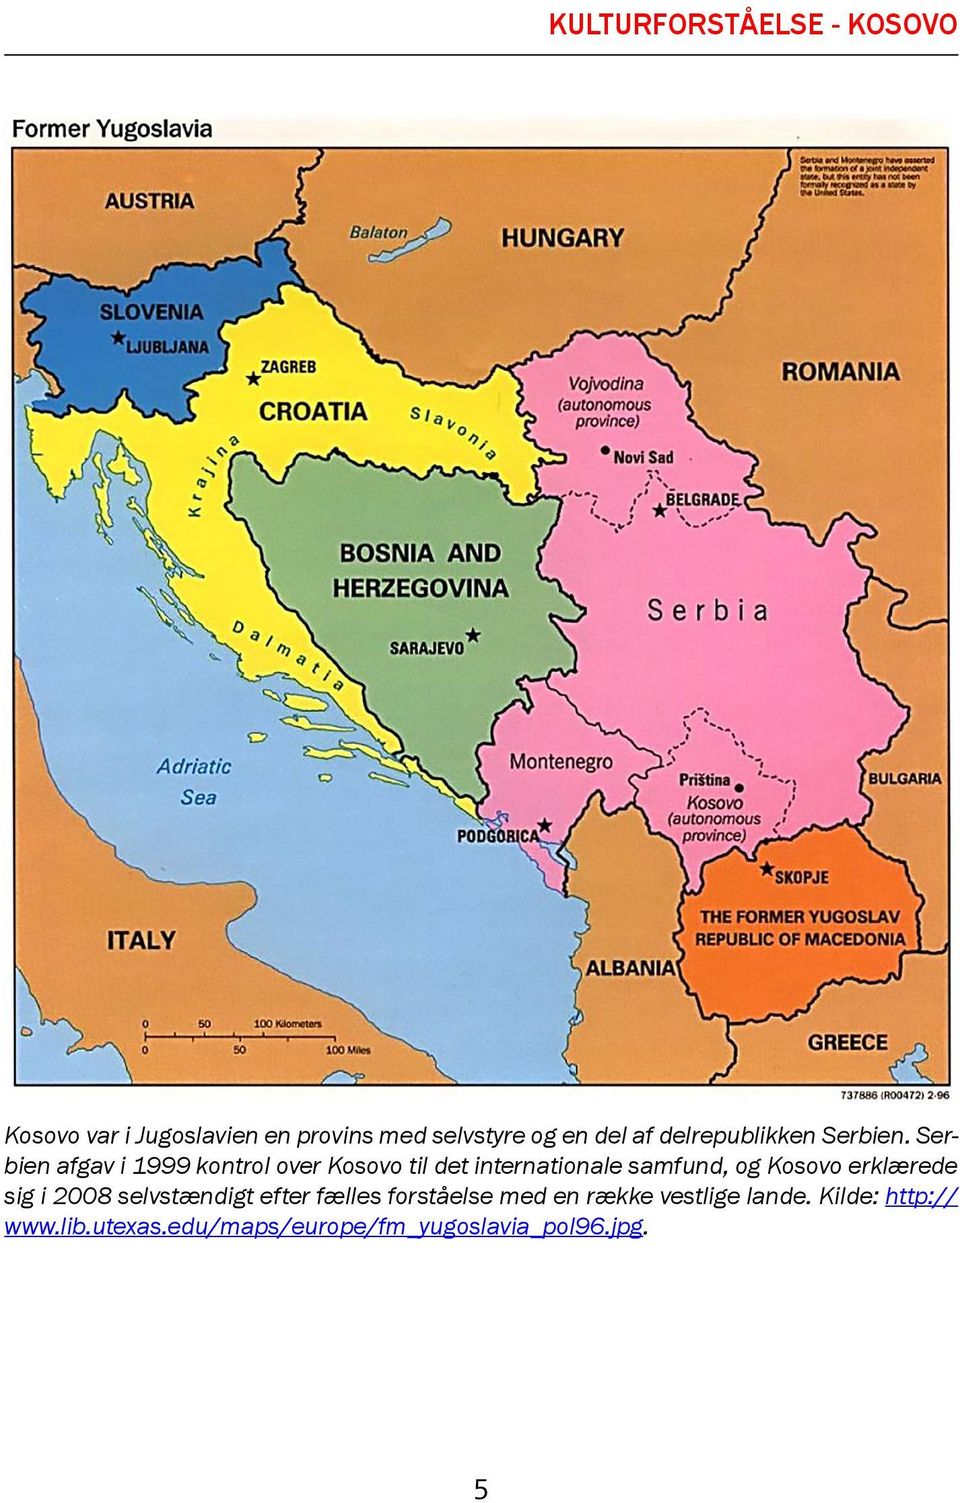 Serbien afgav i 1999 kontrol over Kosovo til det internationale samfund, og Kosovo